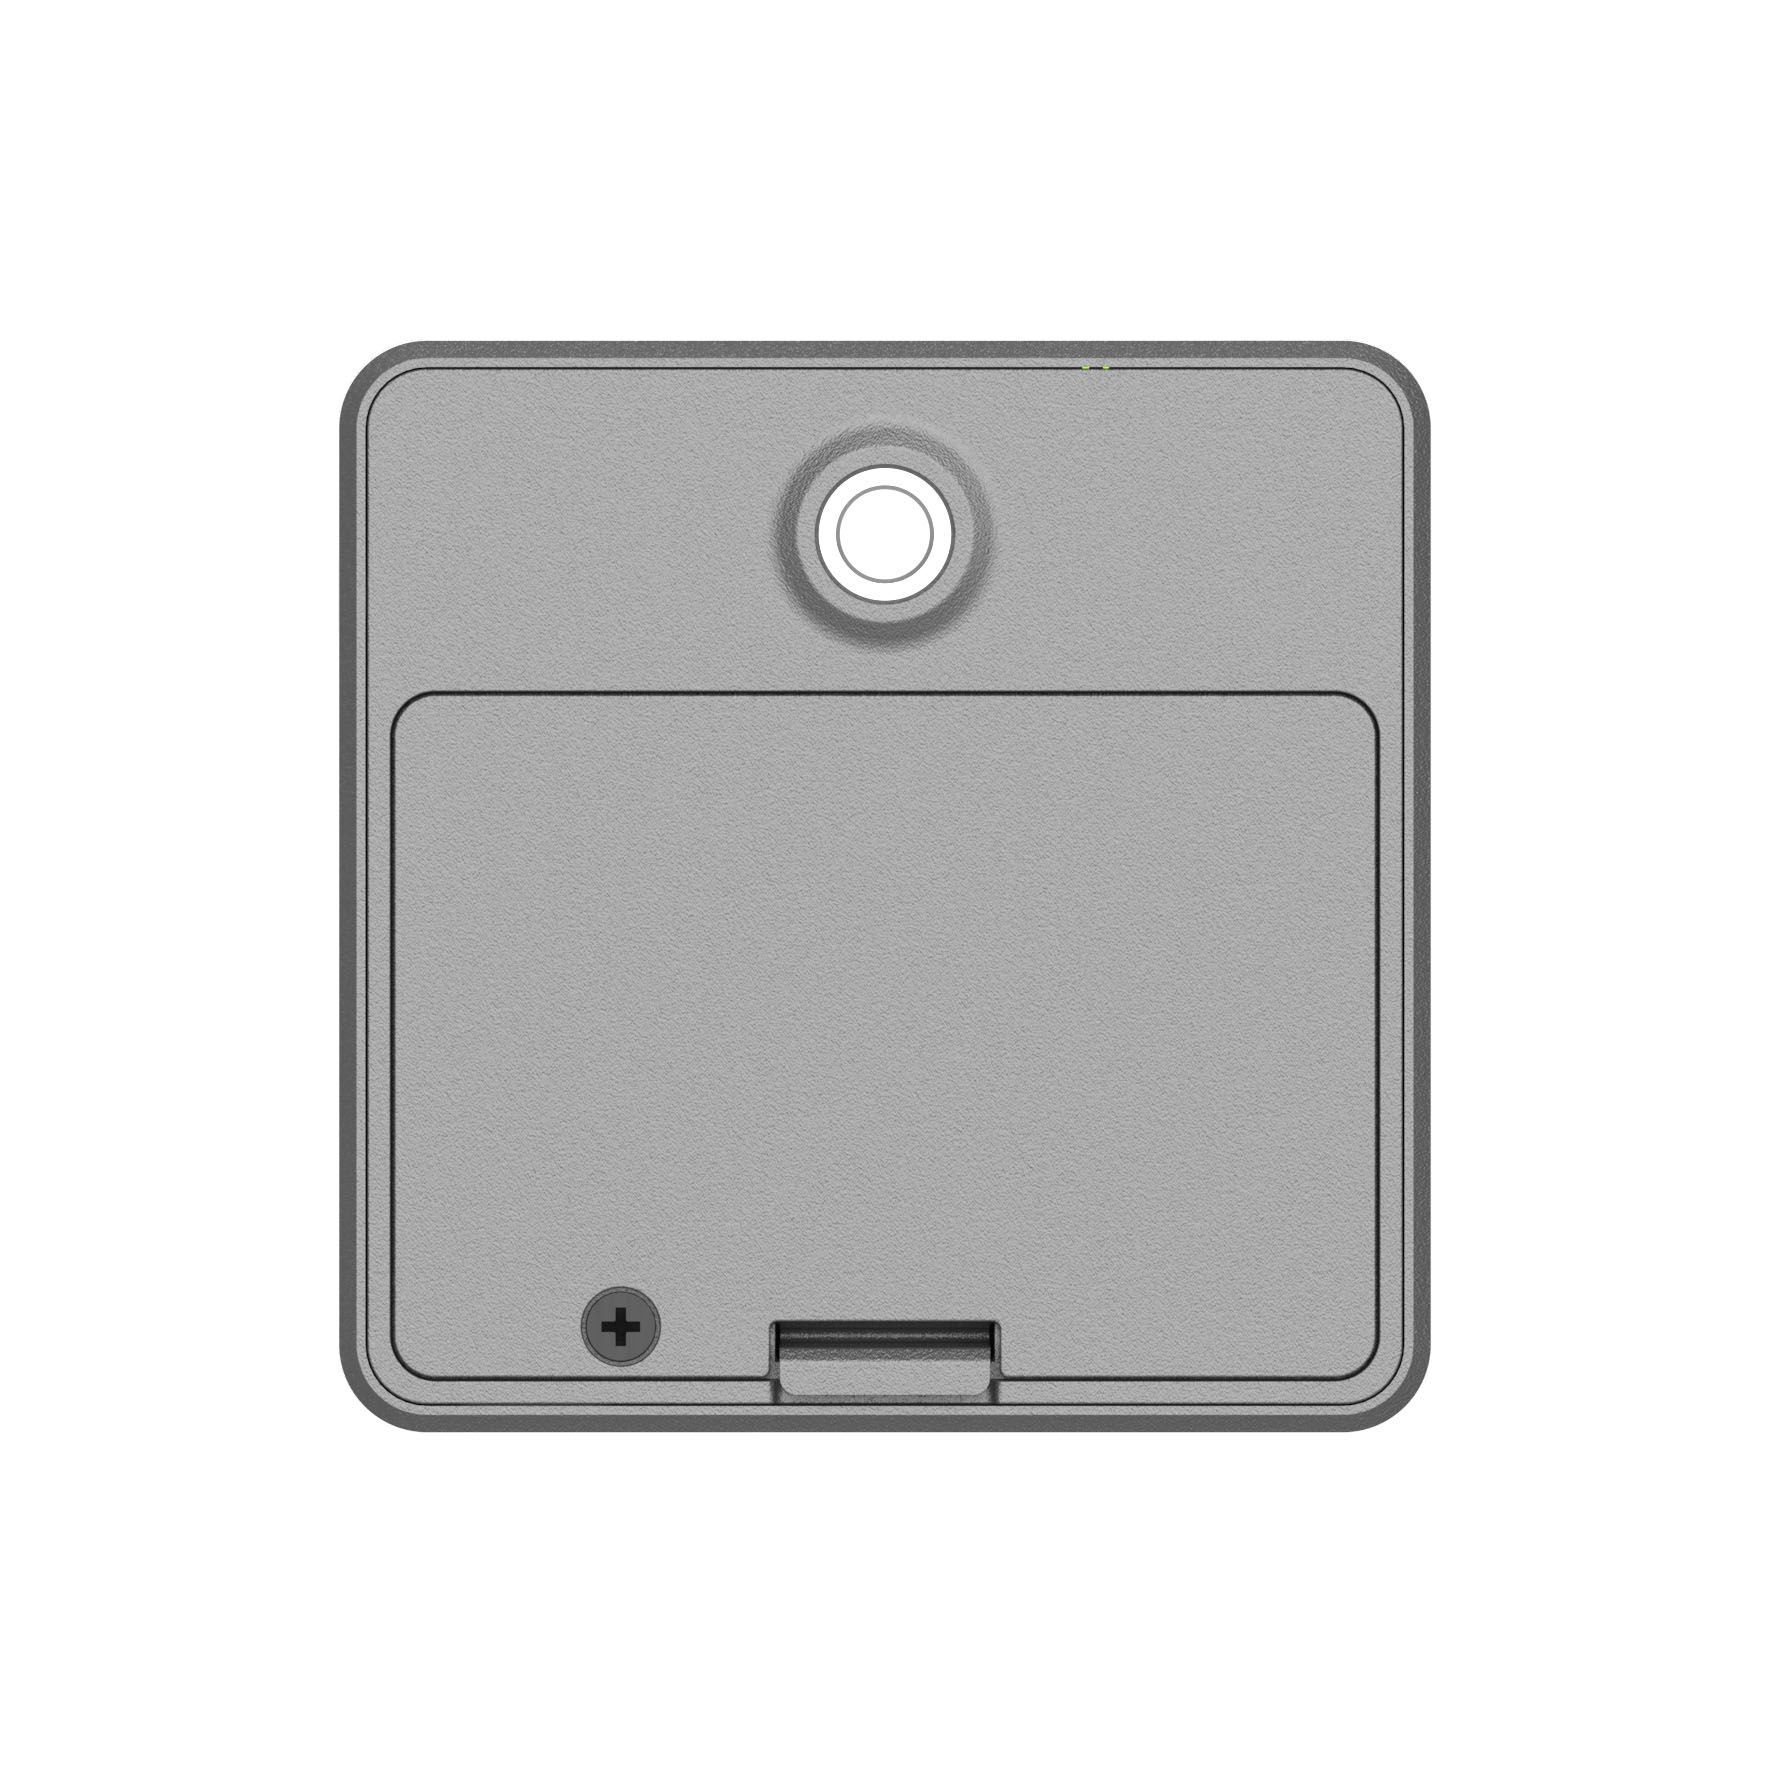 SC541-1020 AIoT Wi-Fi MQTT kamera pro inspekční snímaní